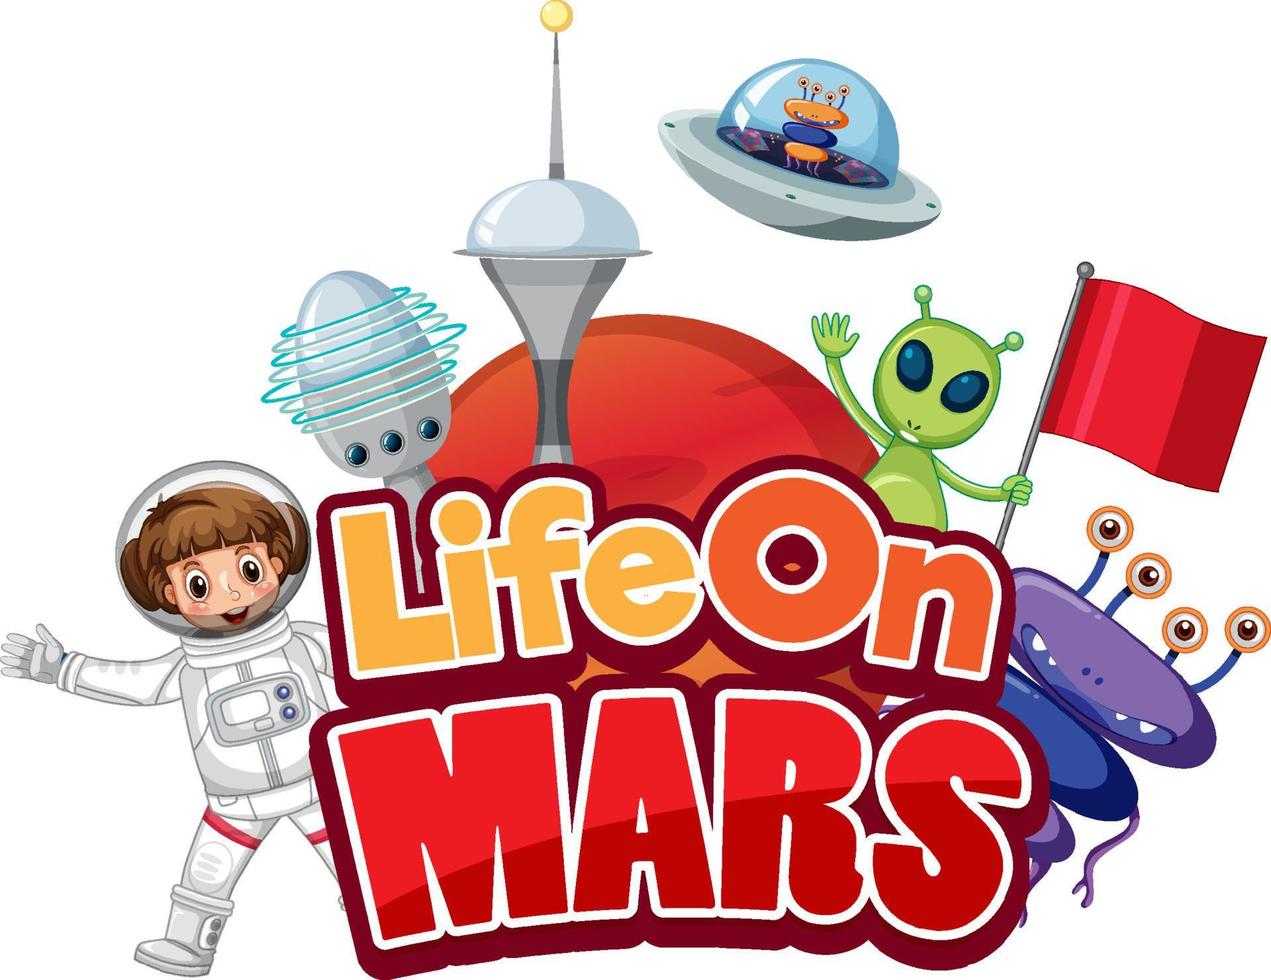 Leben auf dem Mars-Wort-Logo-Design mit Zeichentrickfigur vektor